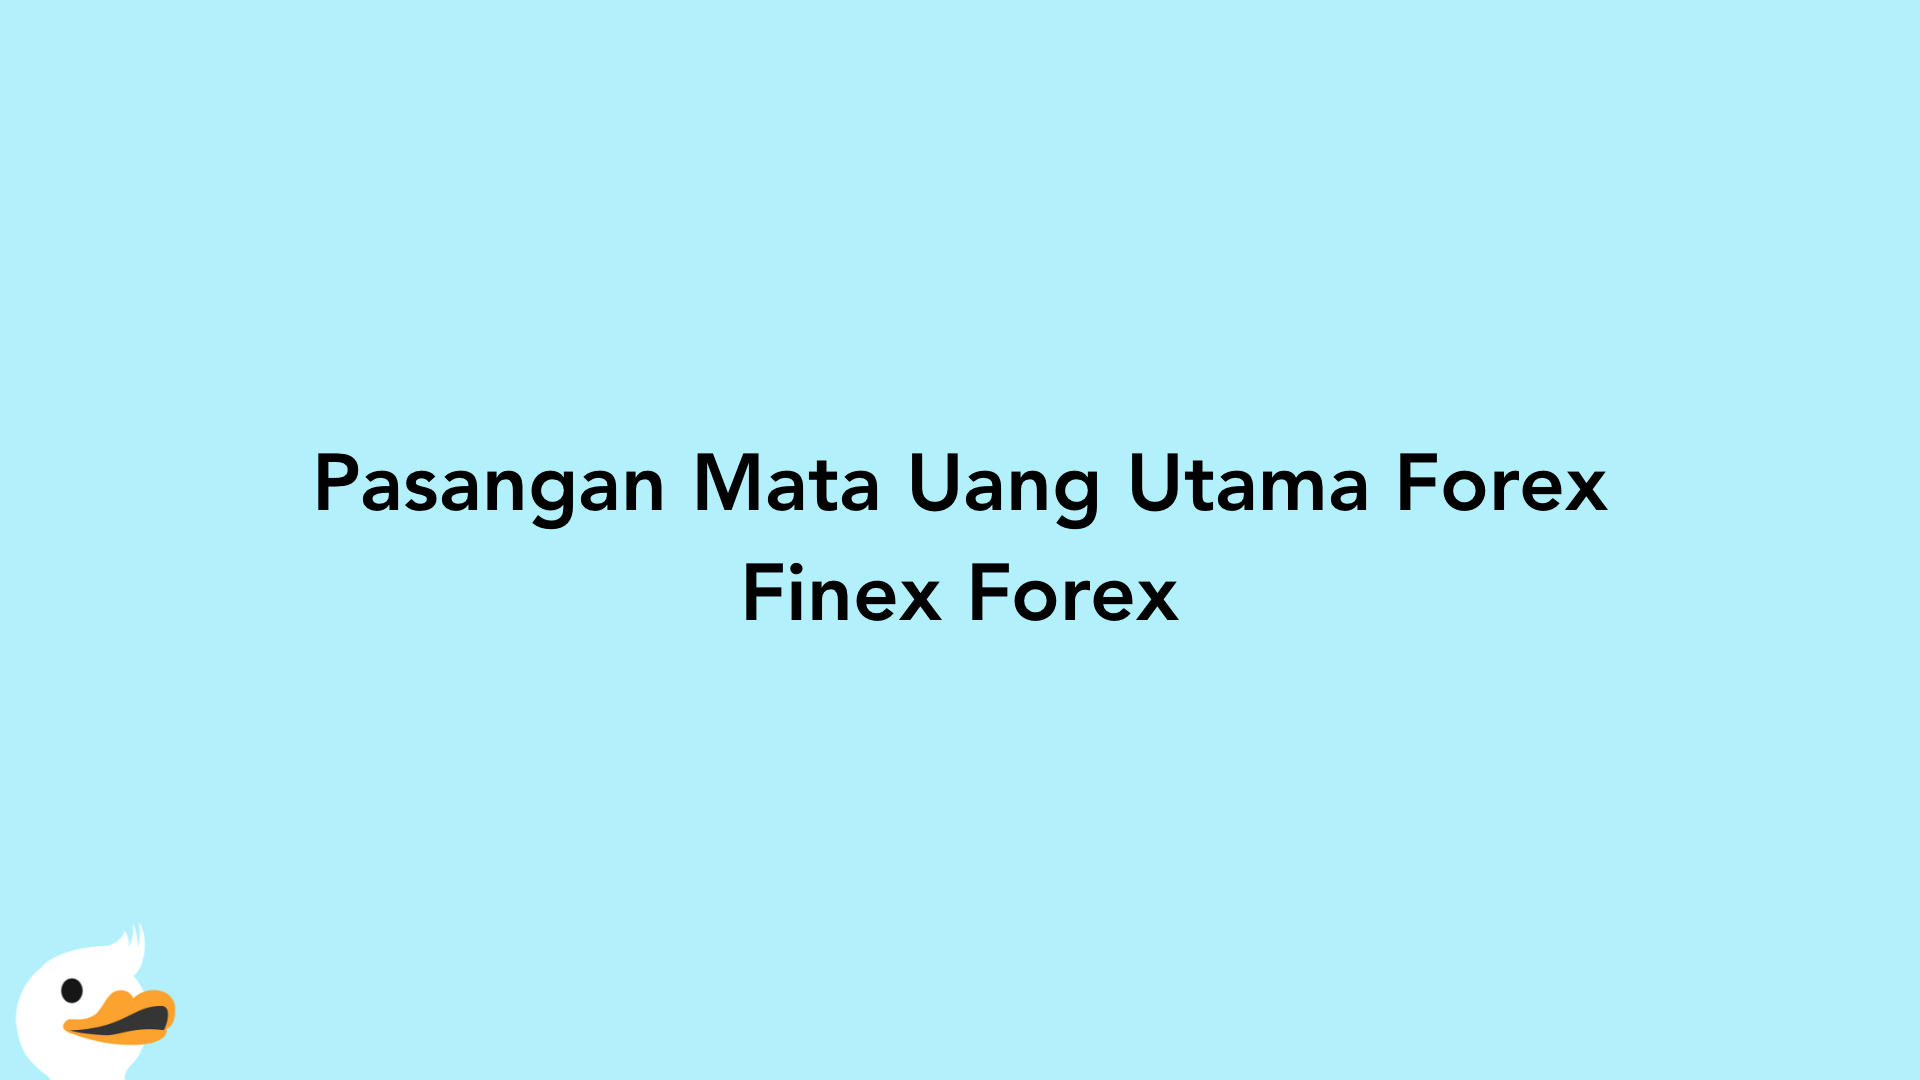 Pasangan Mata Uang Utama Forex Finex Forex